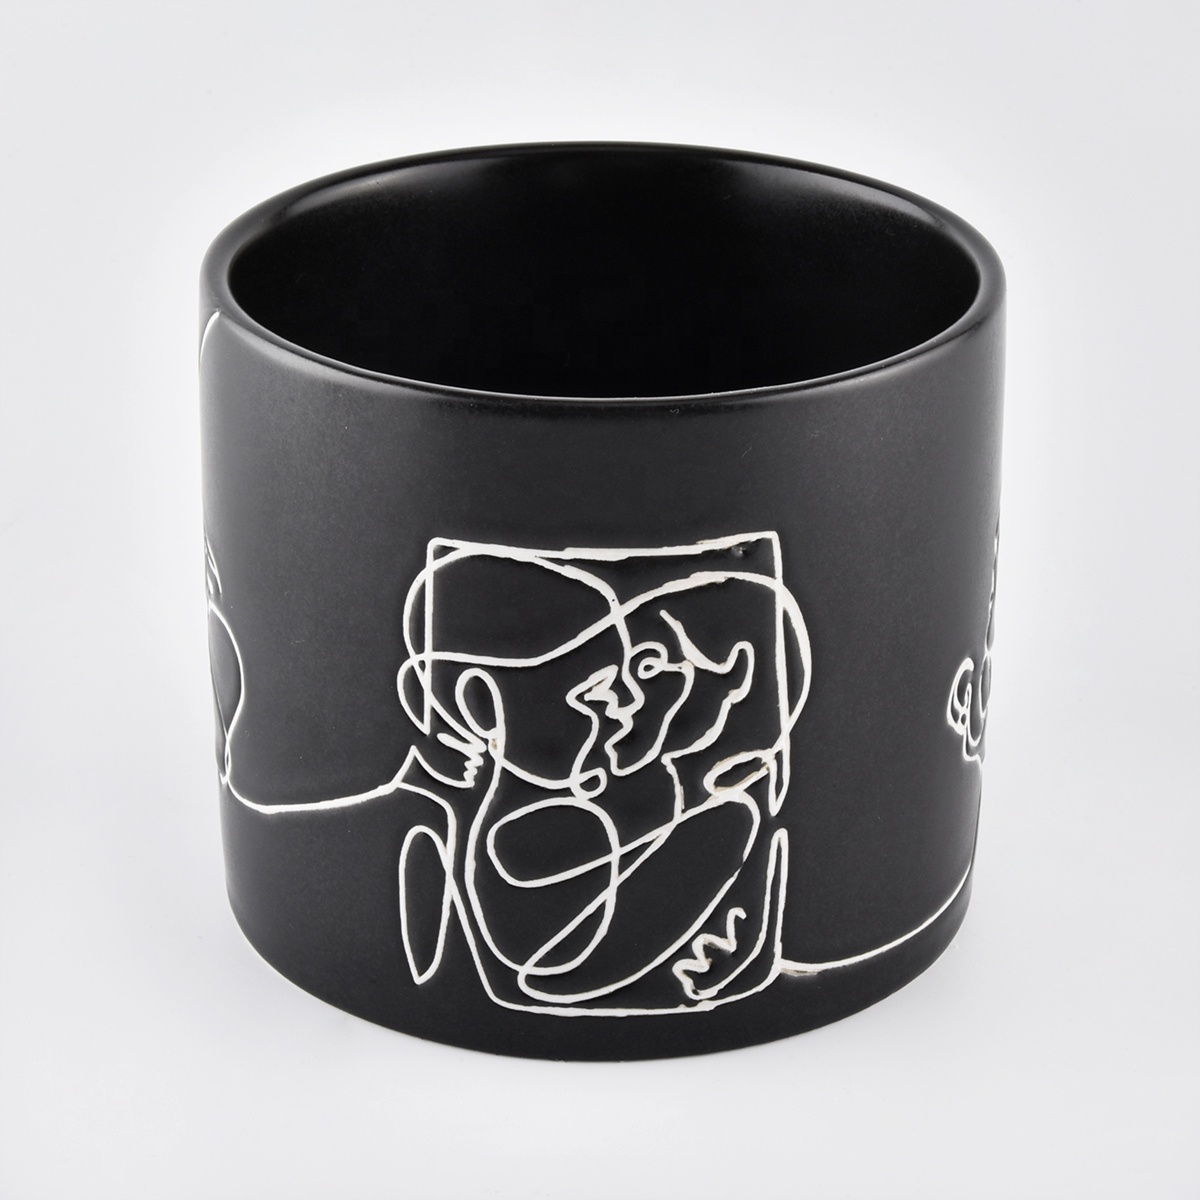 black cylinder ceramic candle jars for home fragrance